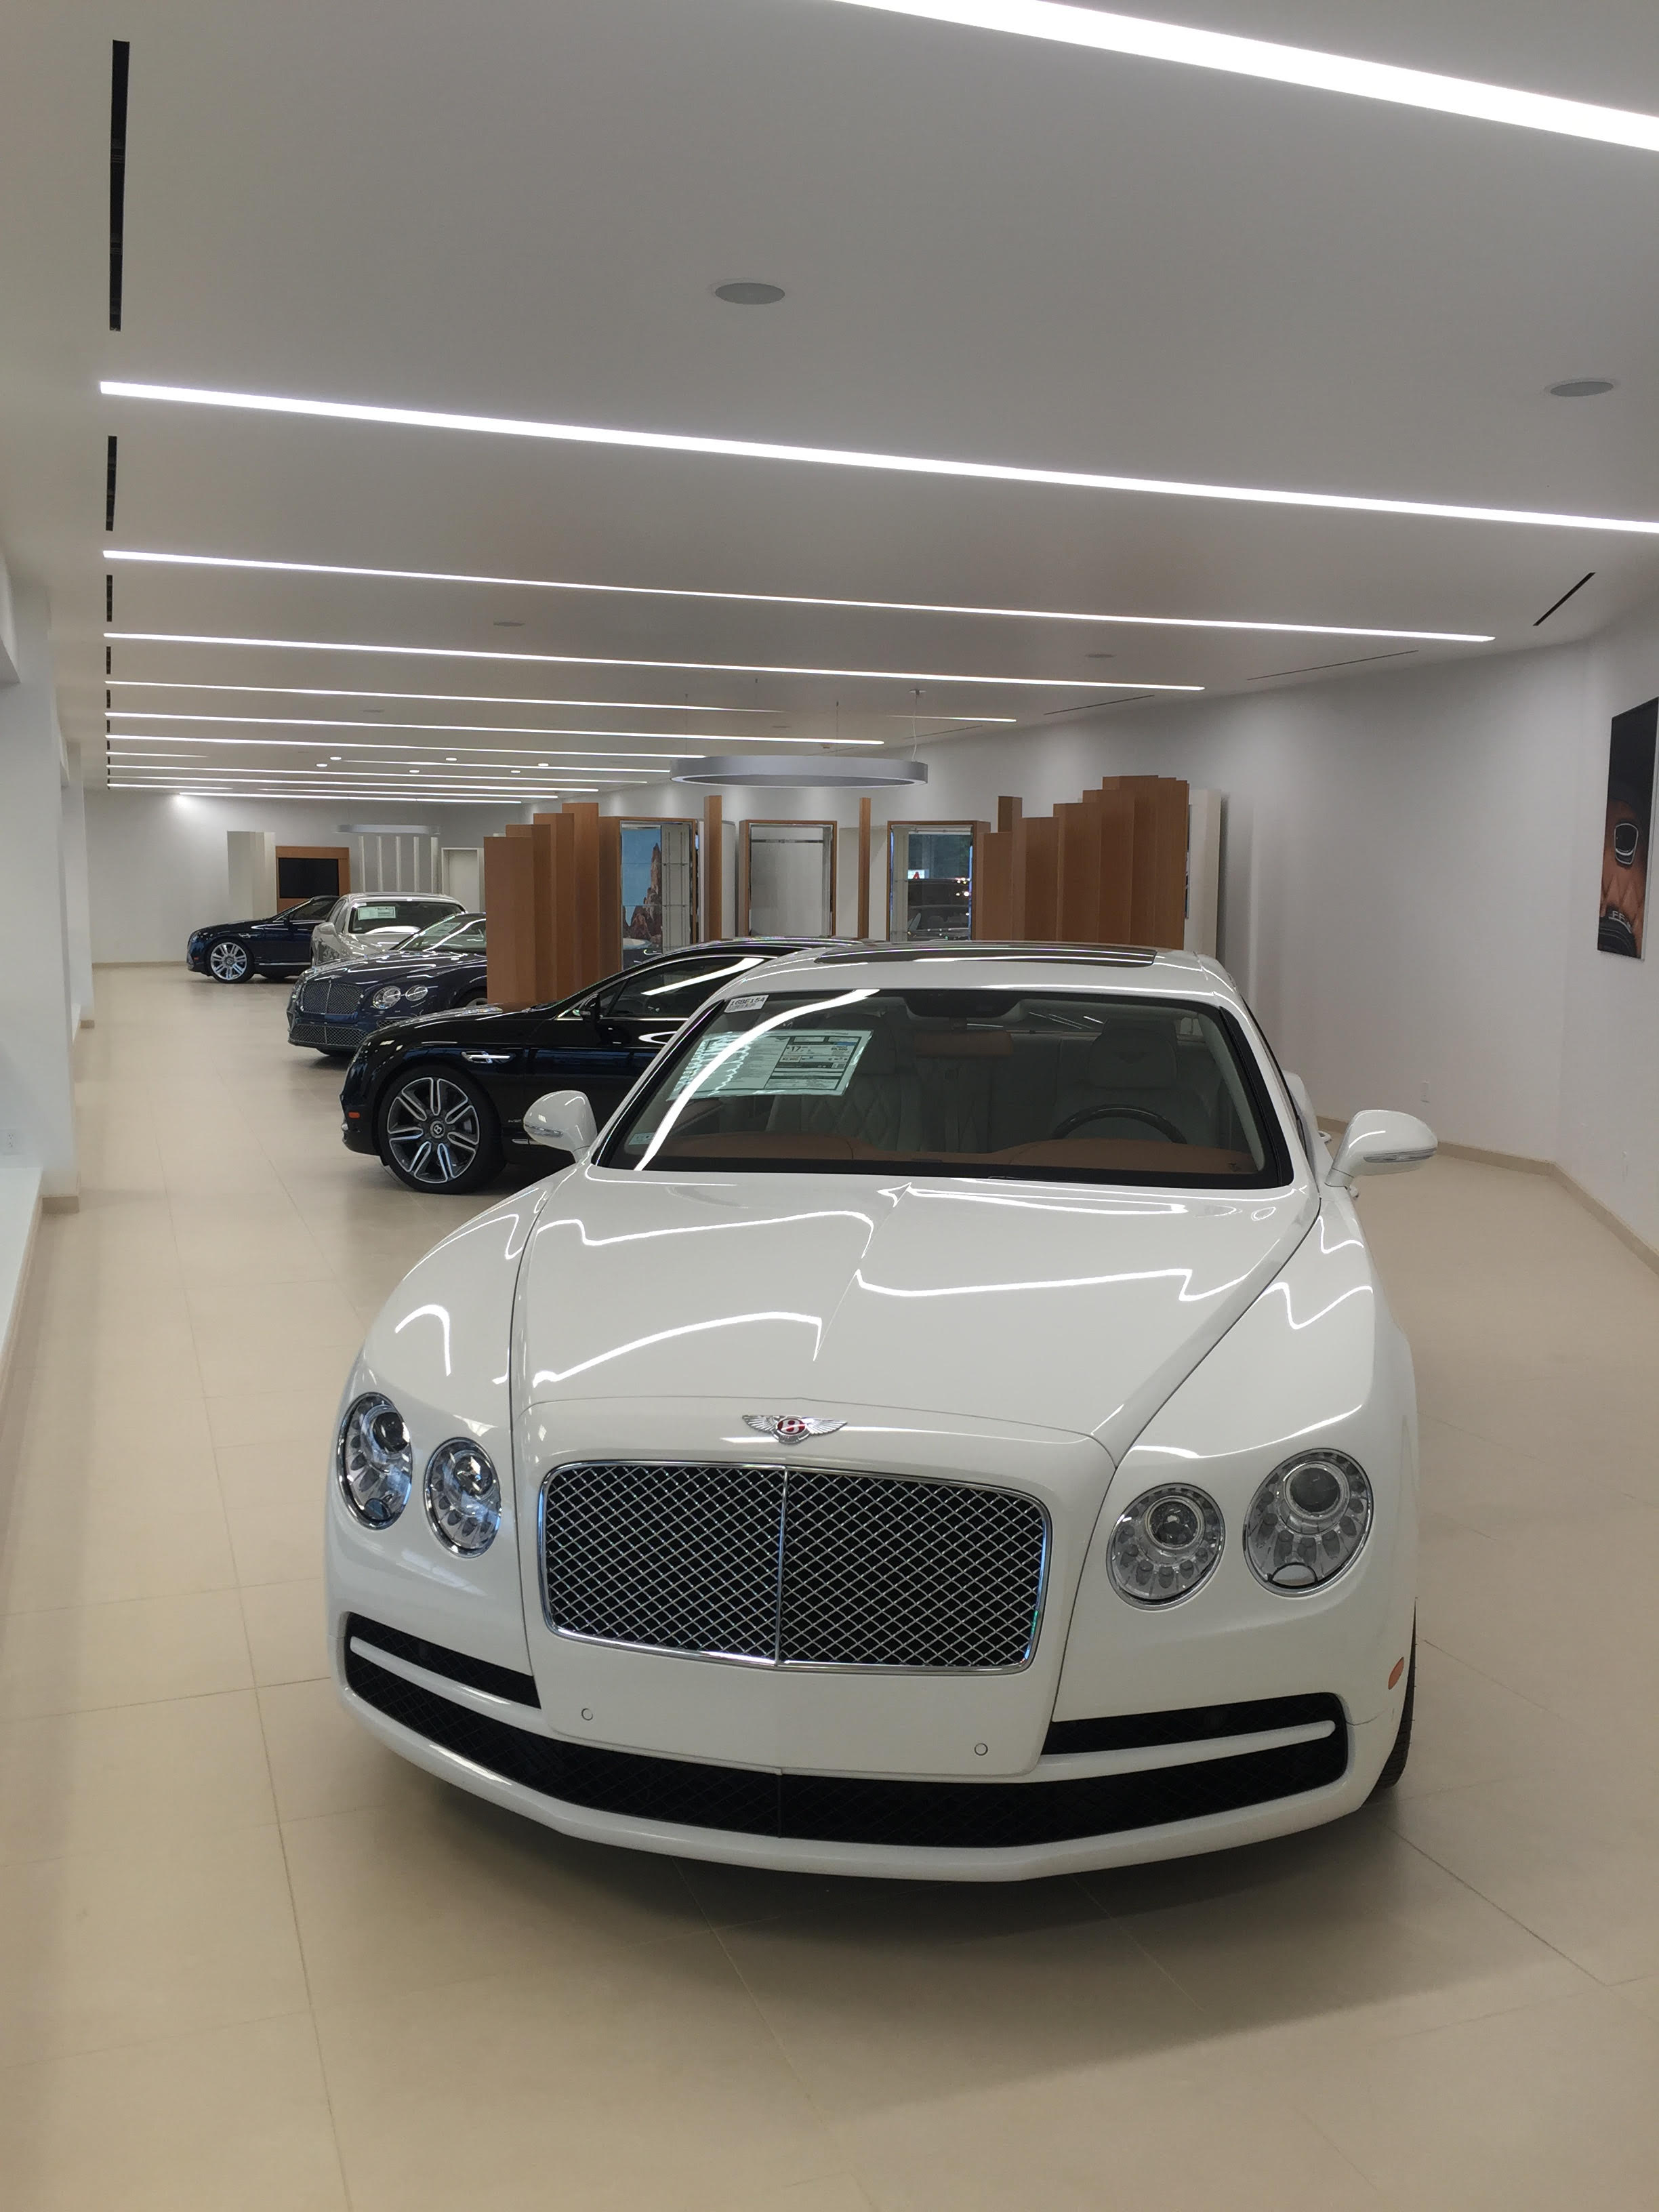 FC Kerbeck Bentley New Car Showroom - New Bentley's On Display - Palmyra, New Jersey 